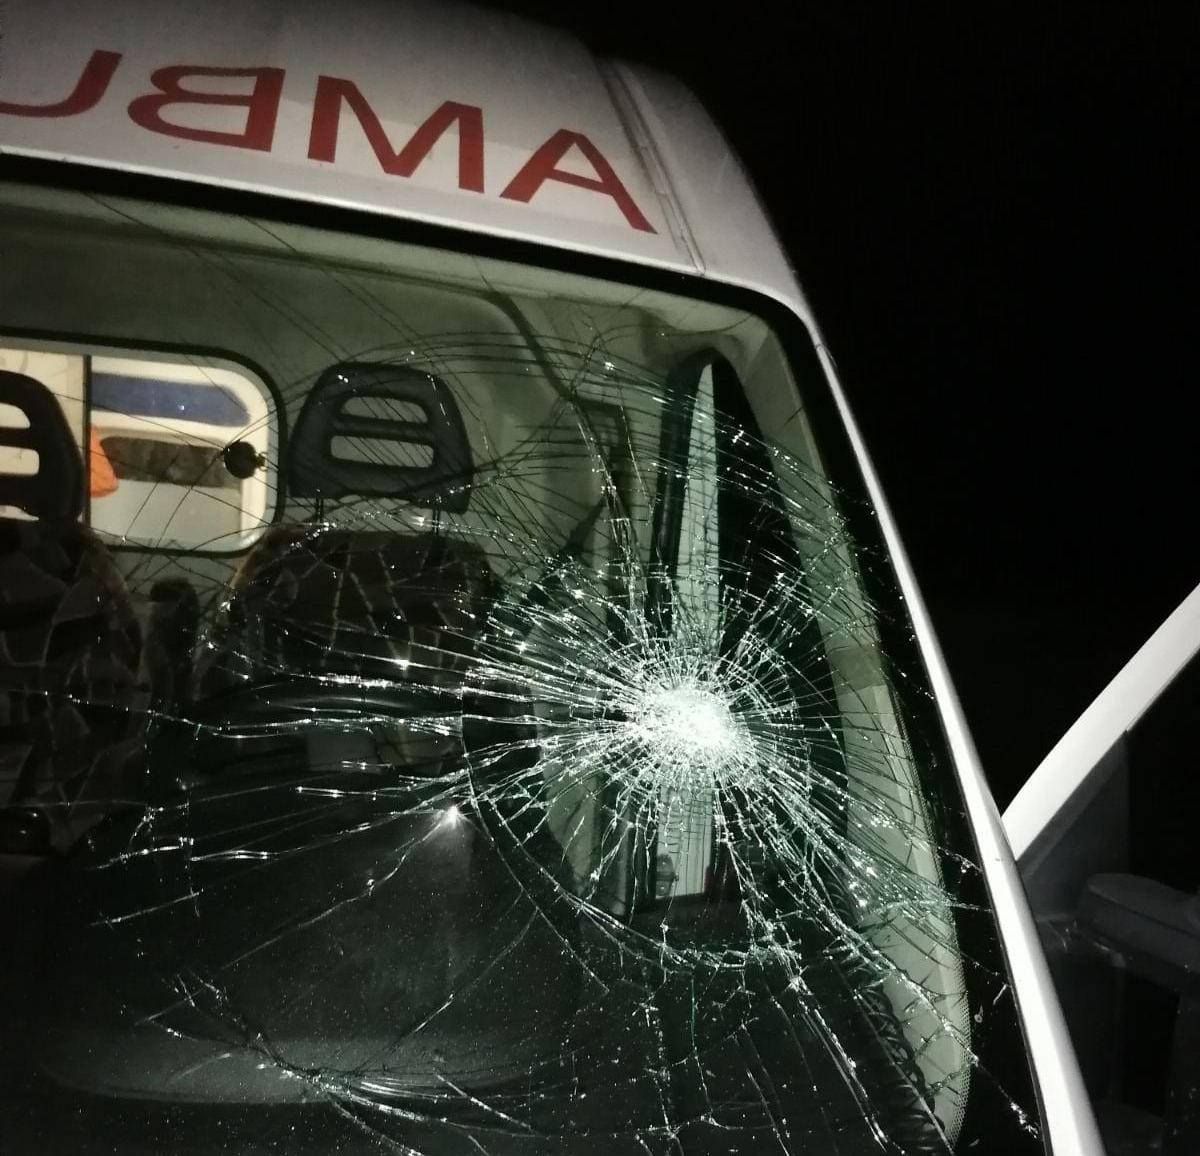 Вместо спасибо - разбитое стекло: под Днепром пьяный водитель разгромил машину скорой помощи (Фото)